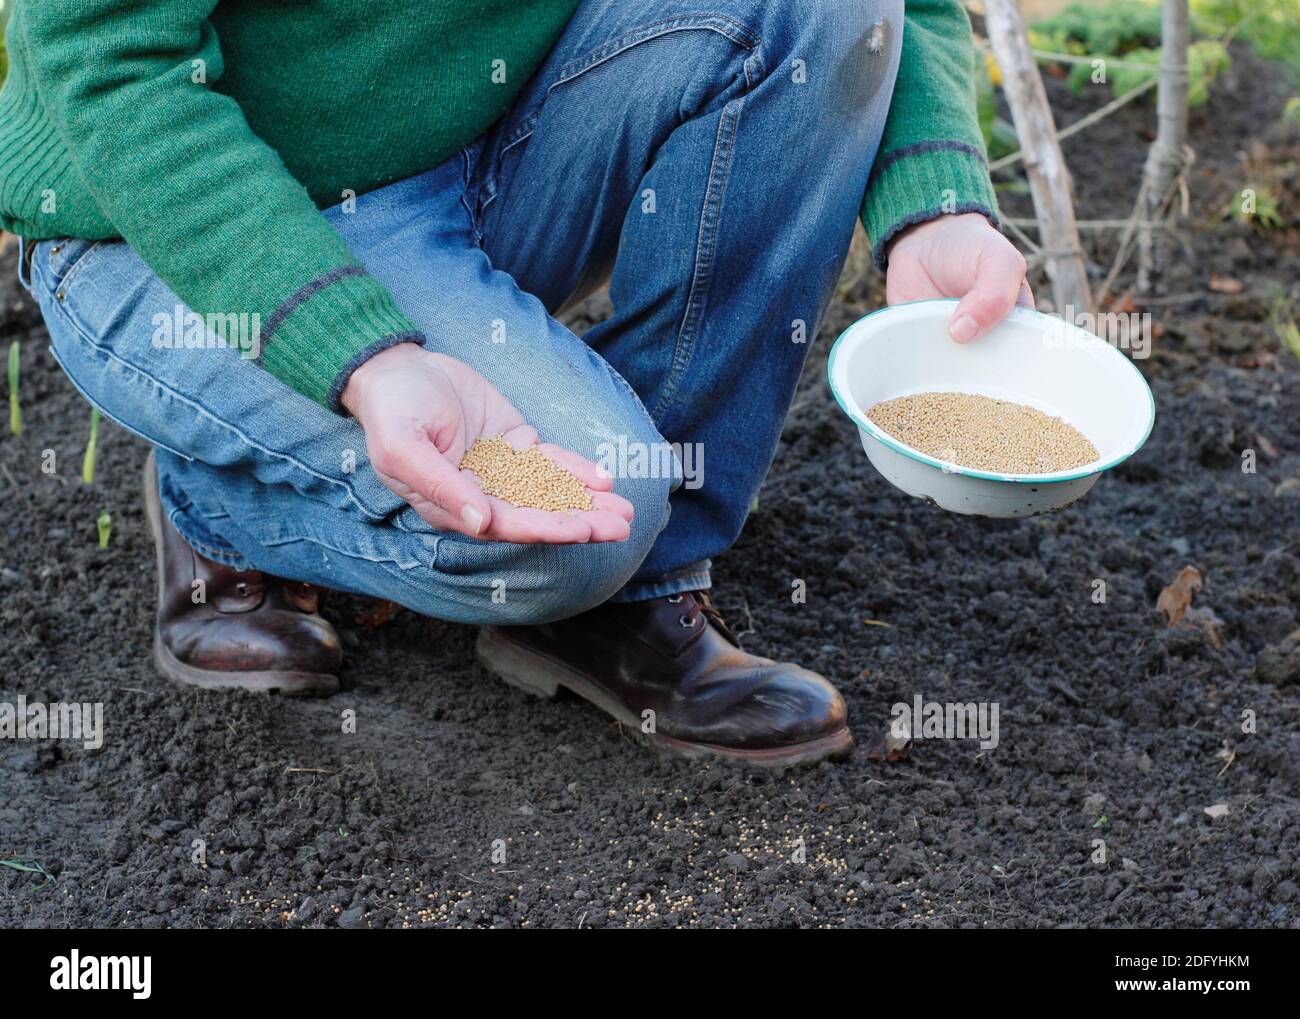 Application de fumier vert. Semer à la main la graine de fumier vert de moutarde 'White Tilney' pour aider à la structure du sol et aider à prévenir les mauvaises herbes dans une parcelle de légumes domestique. ROYAUME-UNI Banque D'Images